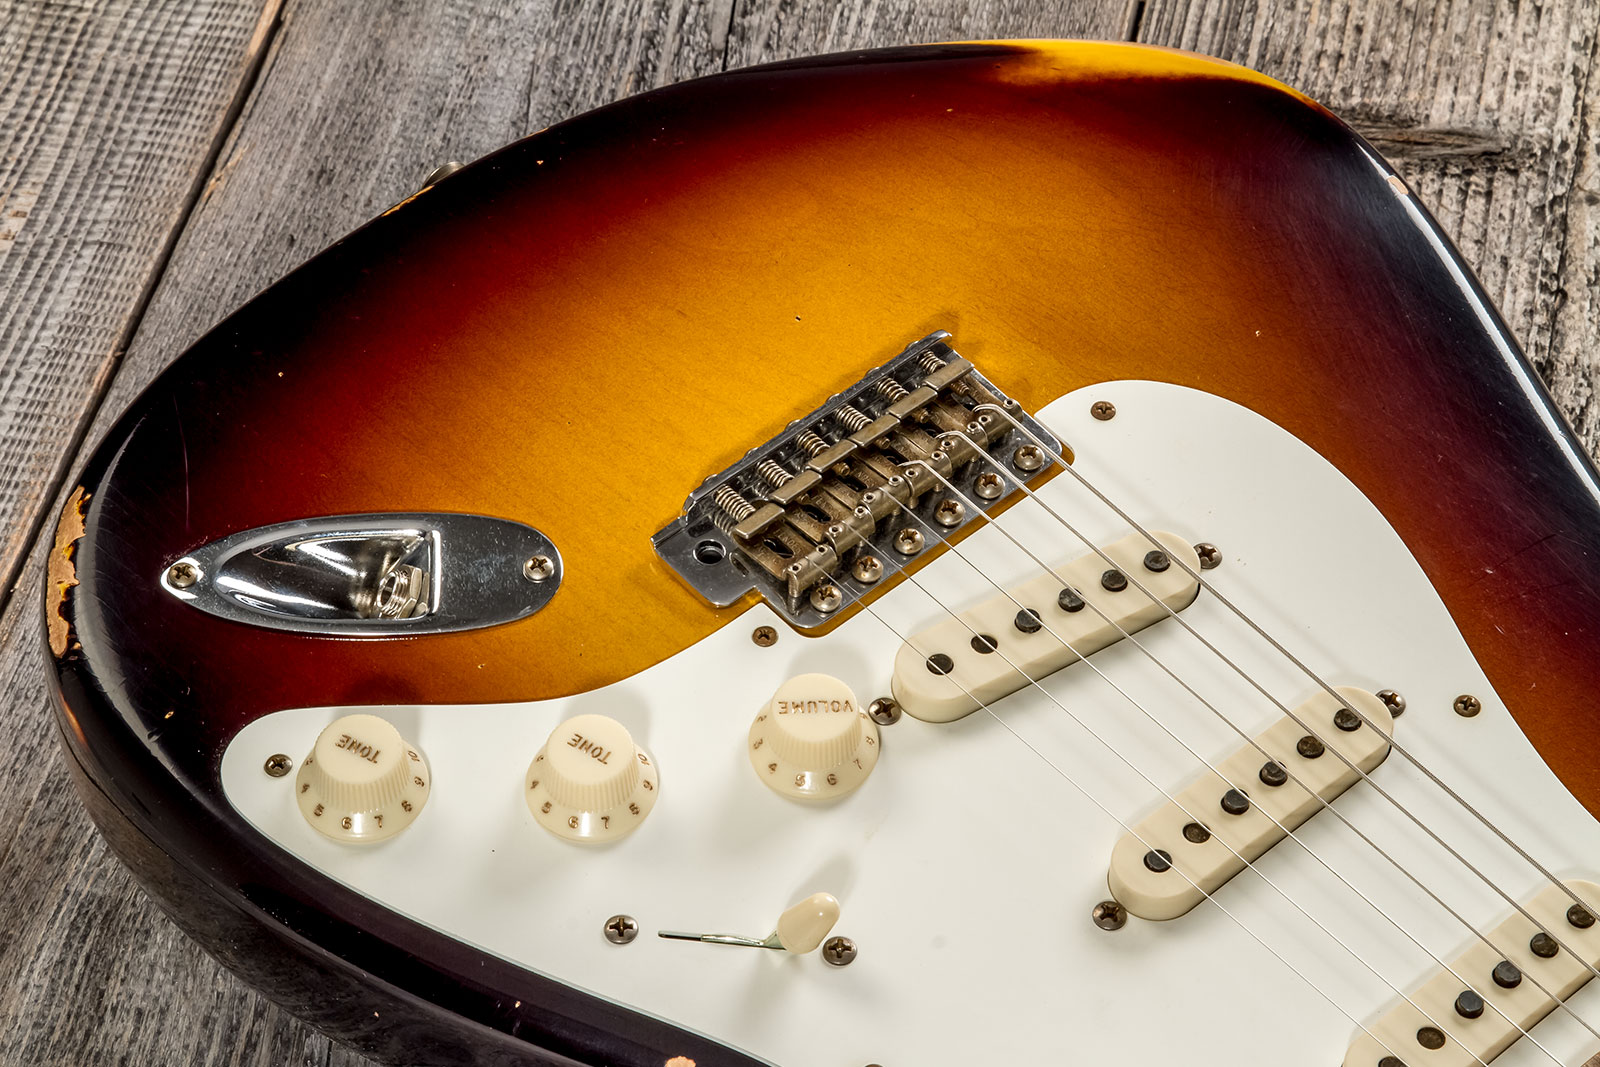 Fender Custom Shop Strat 1957 3s Trem Mn #cz575421 - Relic 2-color Sunburst - Str shape electric guitar - Variation 3